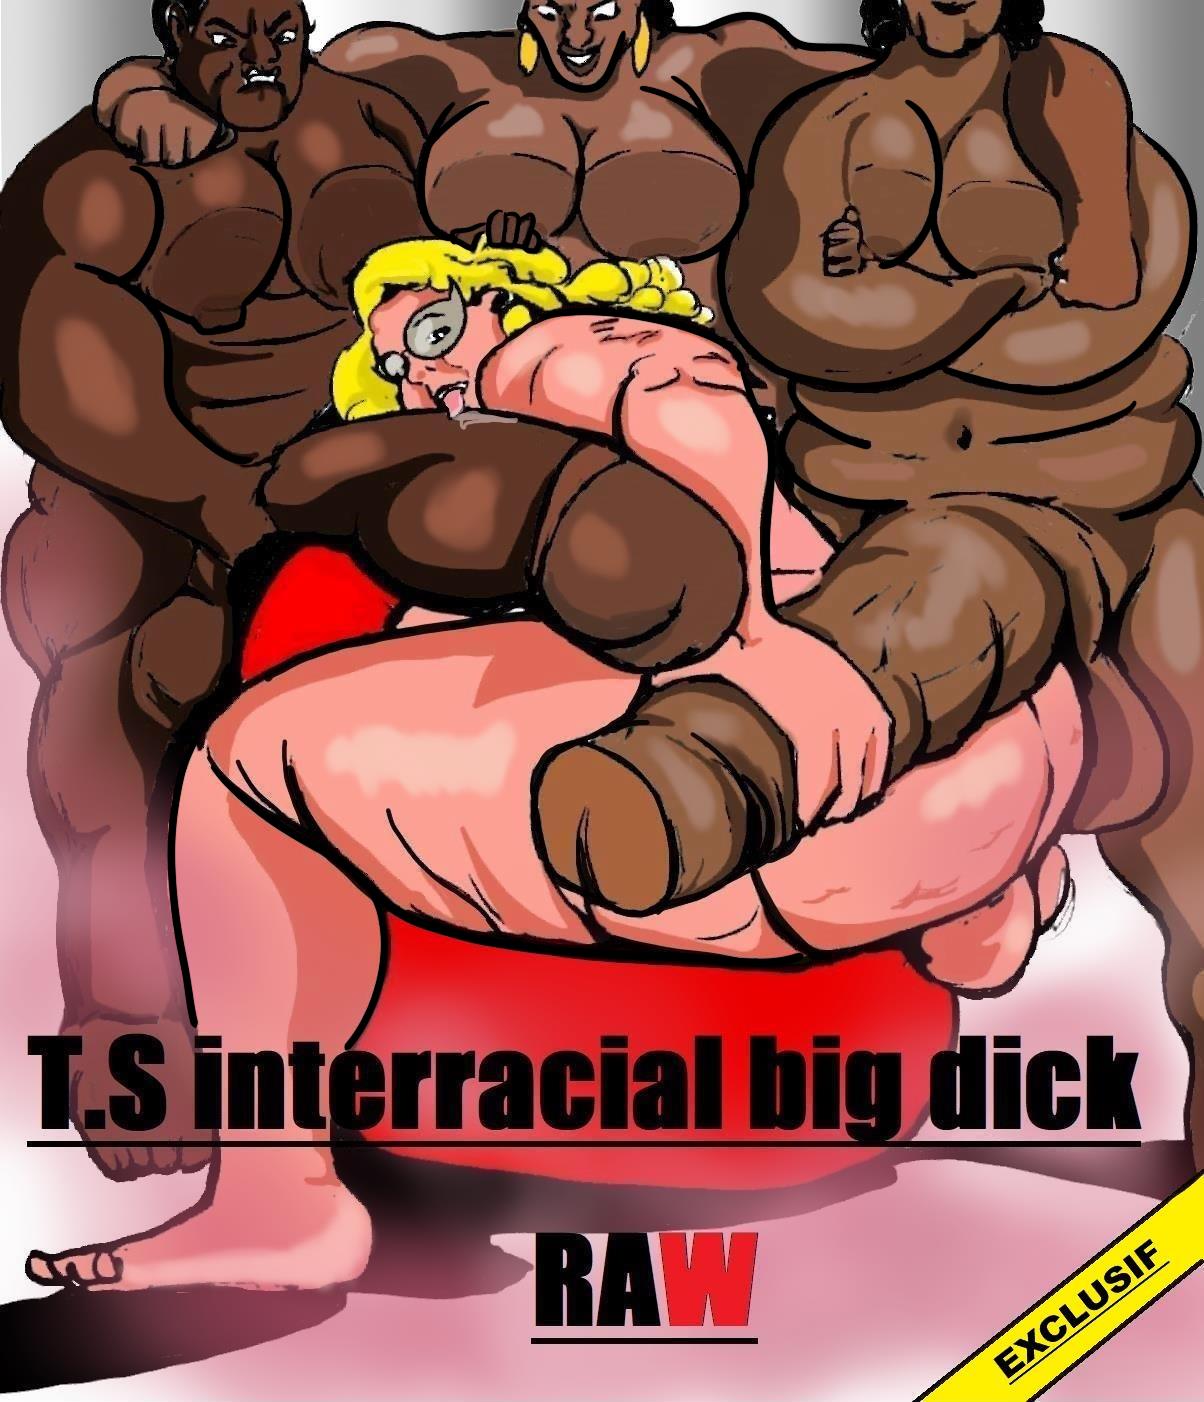 Cartoon Big Cock Shemales - Shemale Interracial Big Dick Raw- Carter Tyron - Porn Cartoon Comics